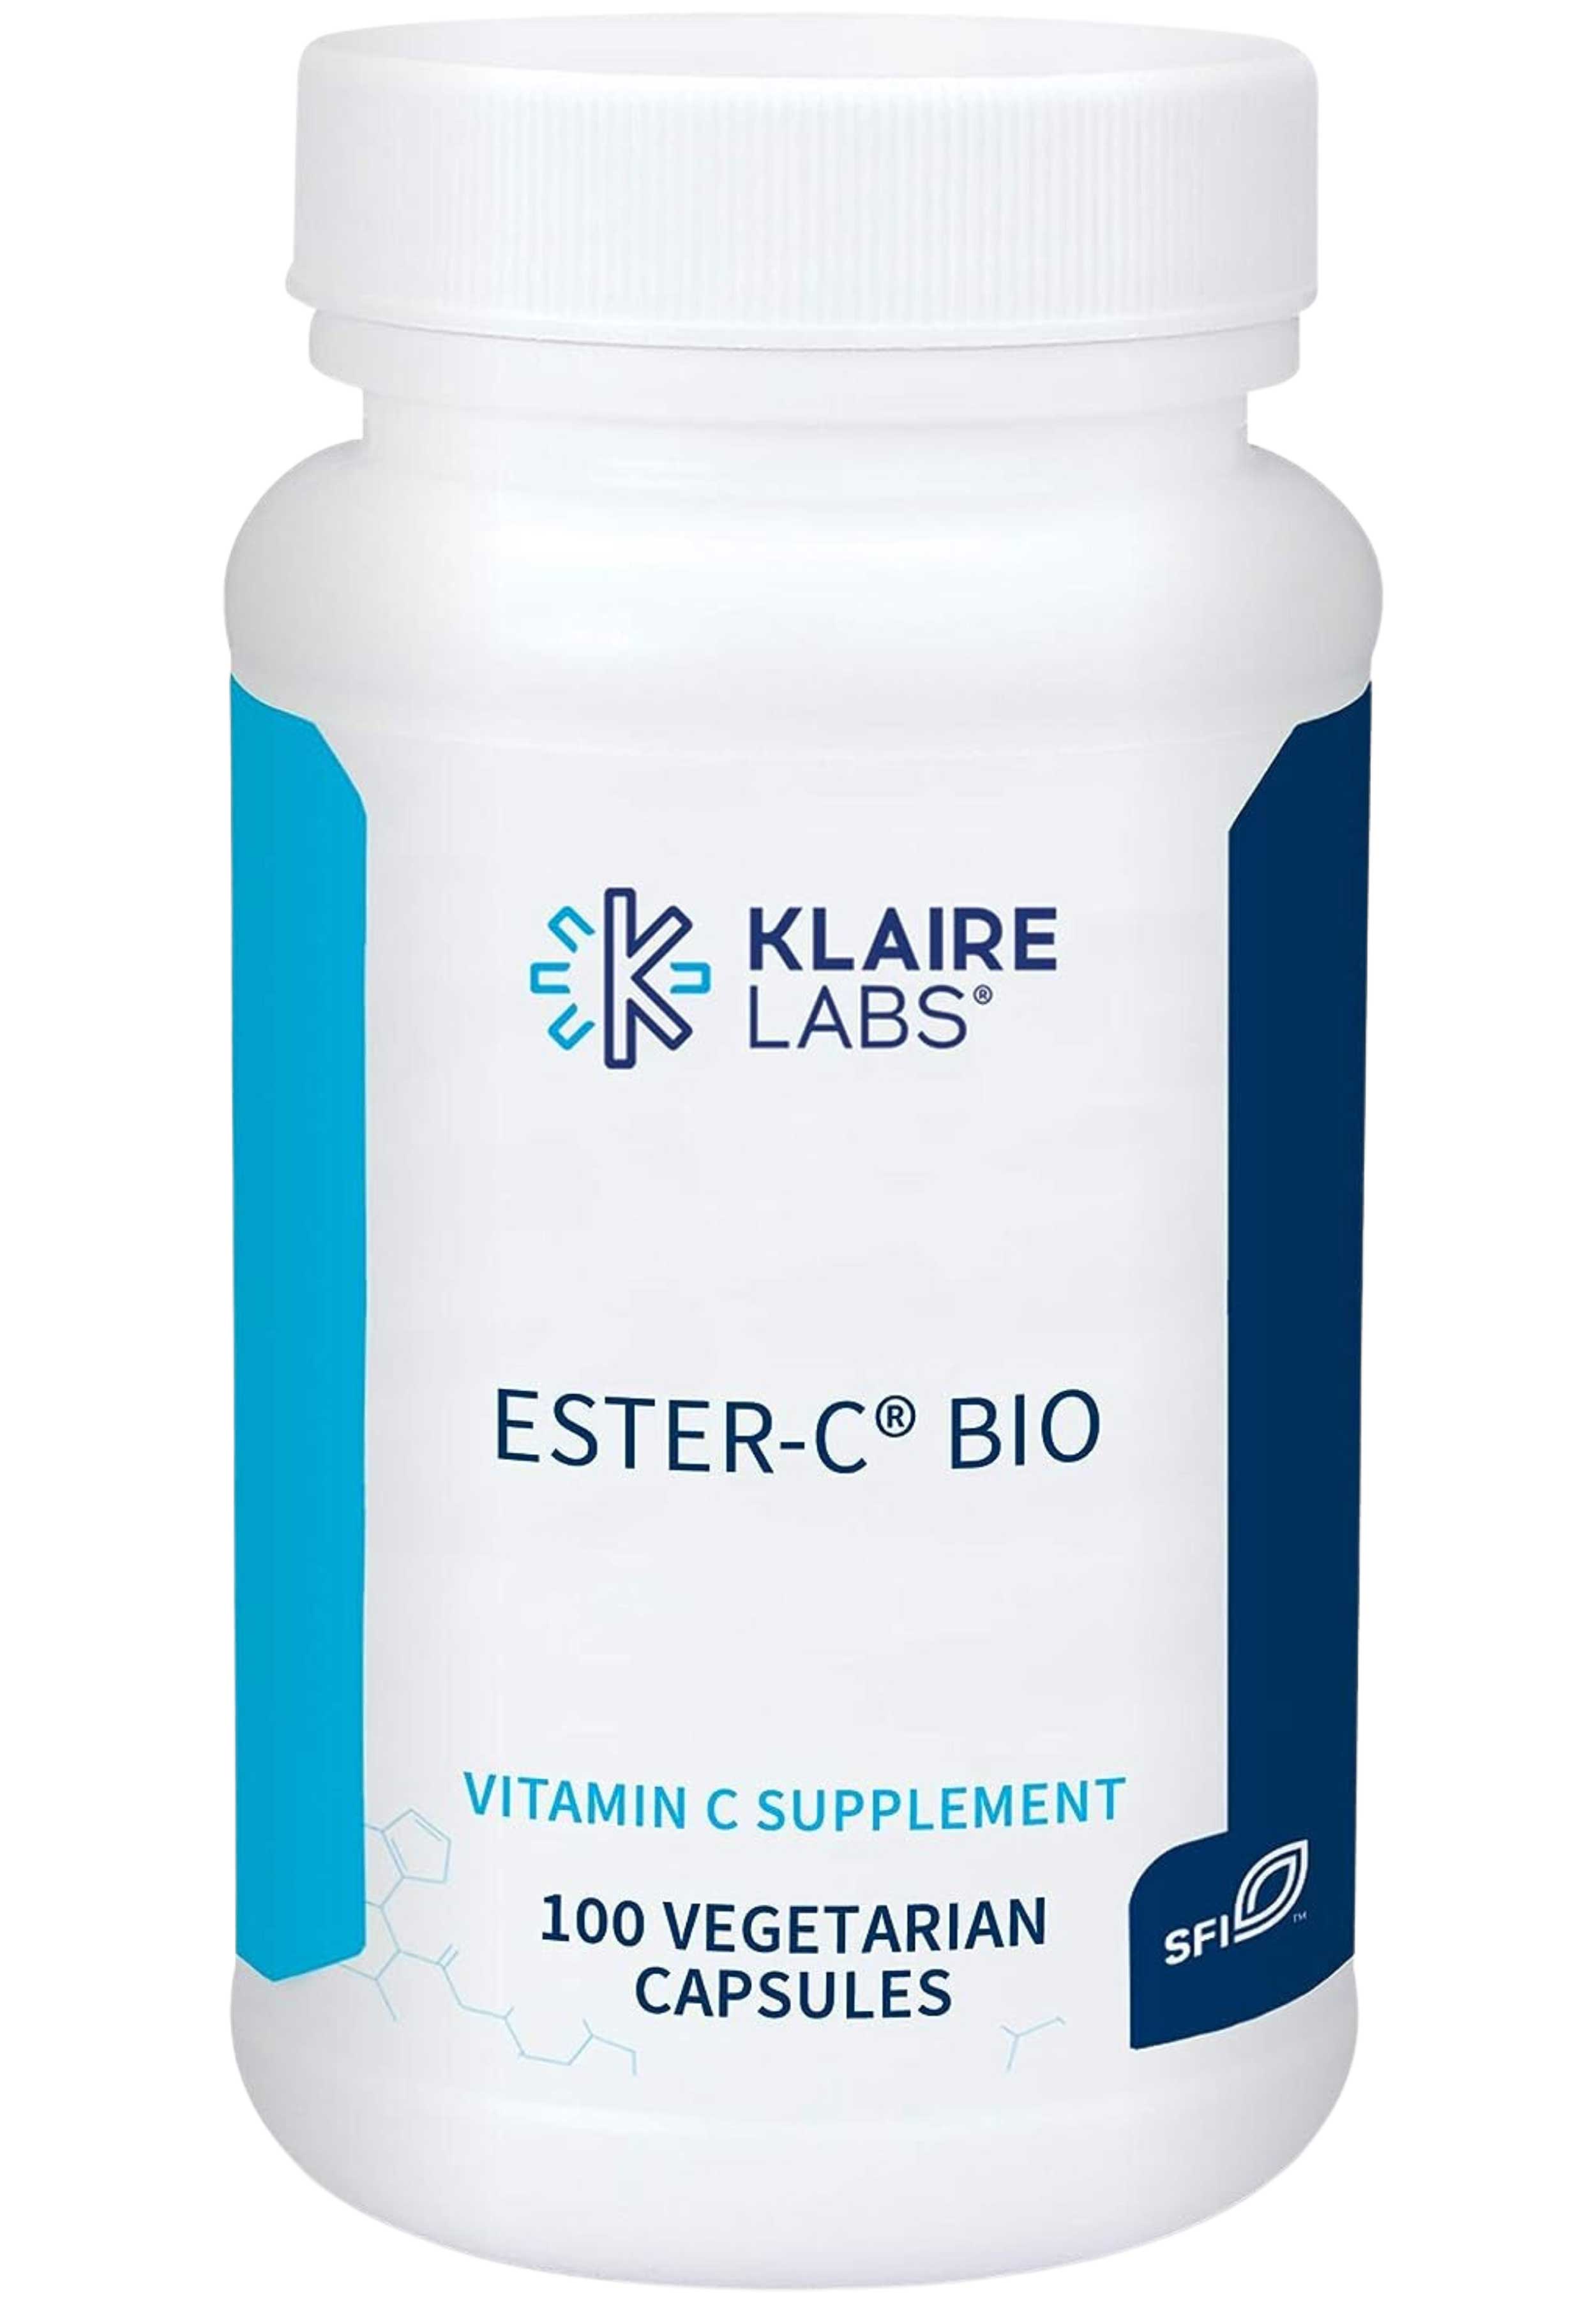 Klaire Labs Ester-C® Bio